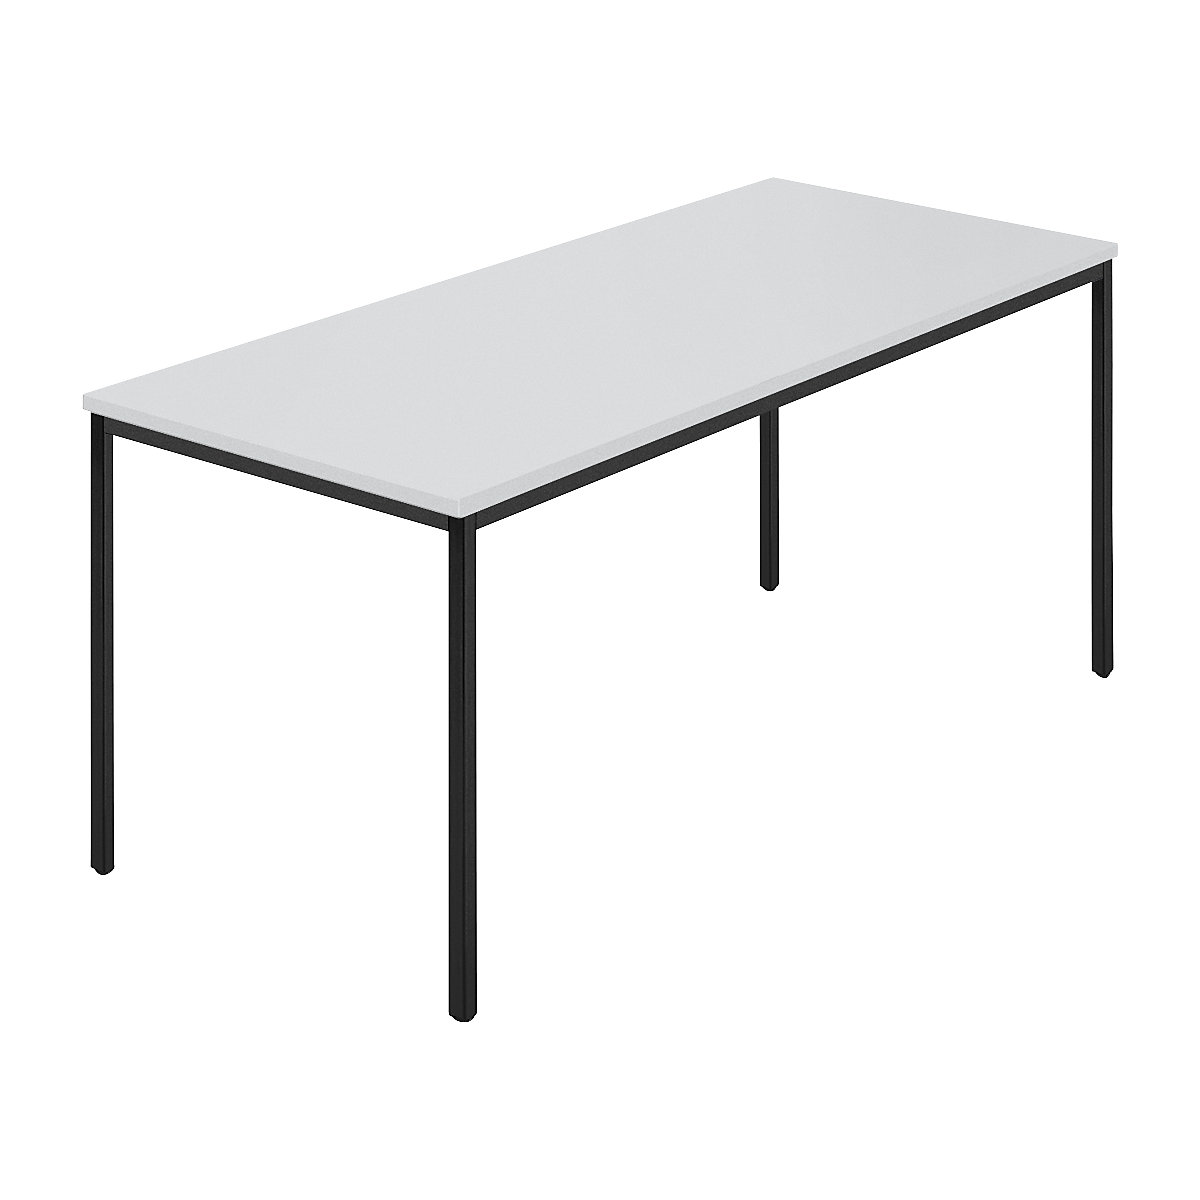 Table rectangulaire, tube carré plastifié, l x p 1600 x 800 mm, gris / anthracite-6